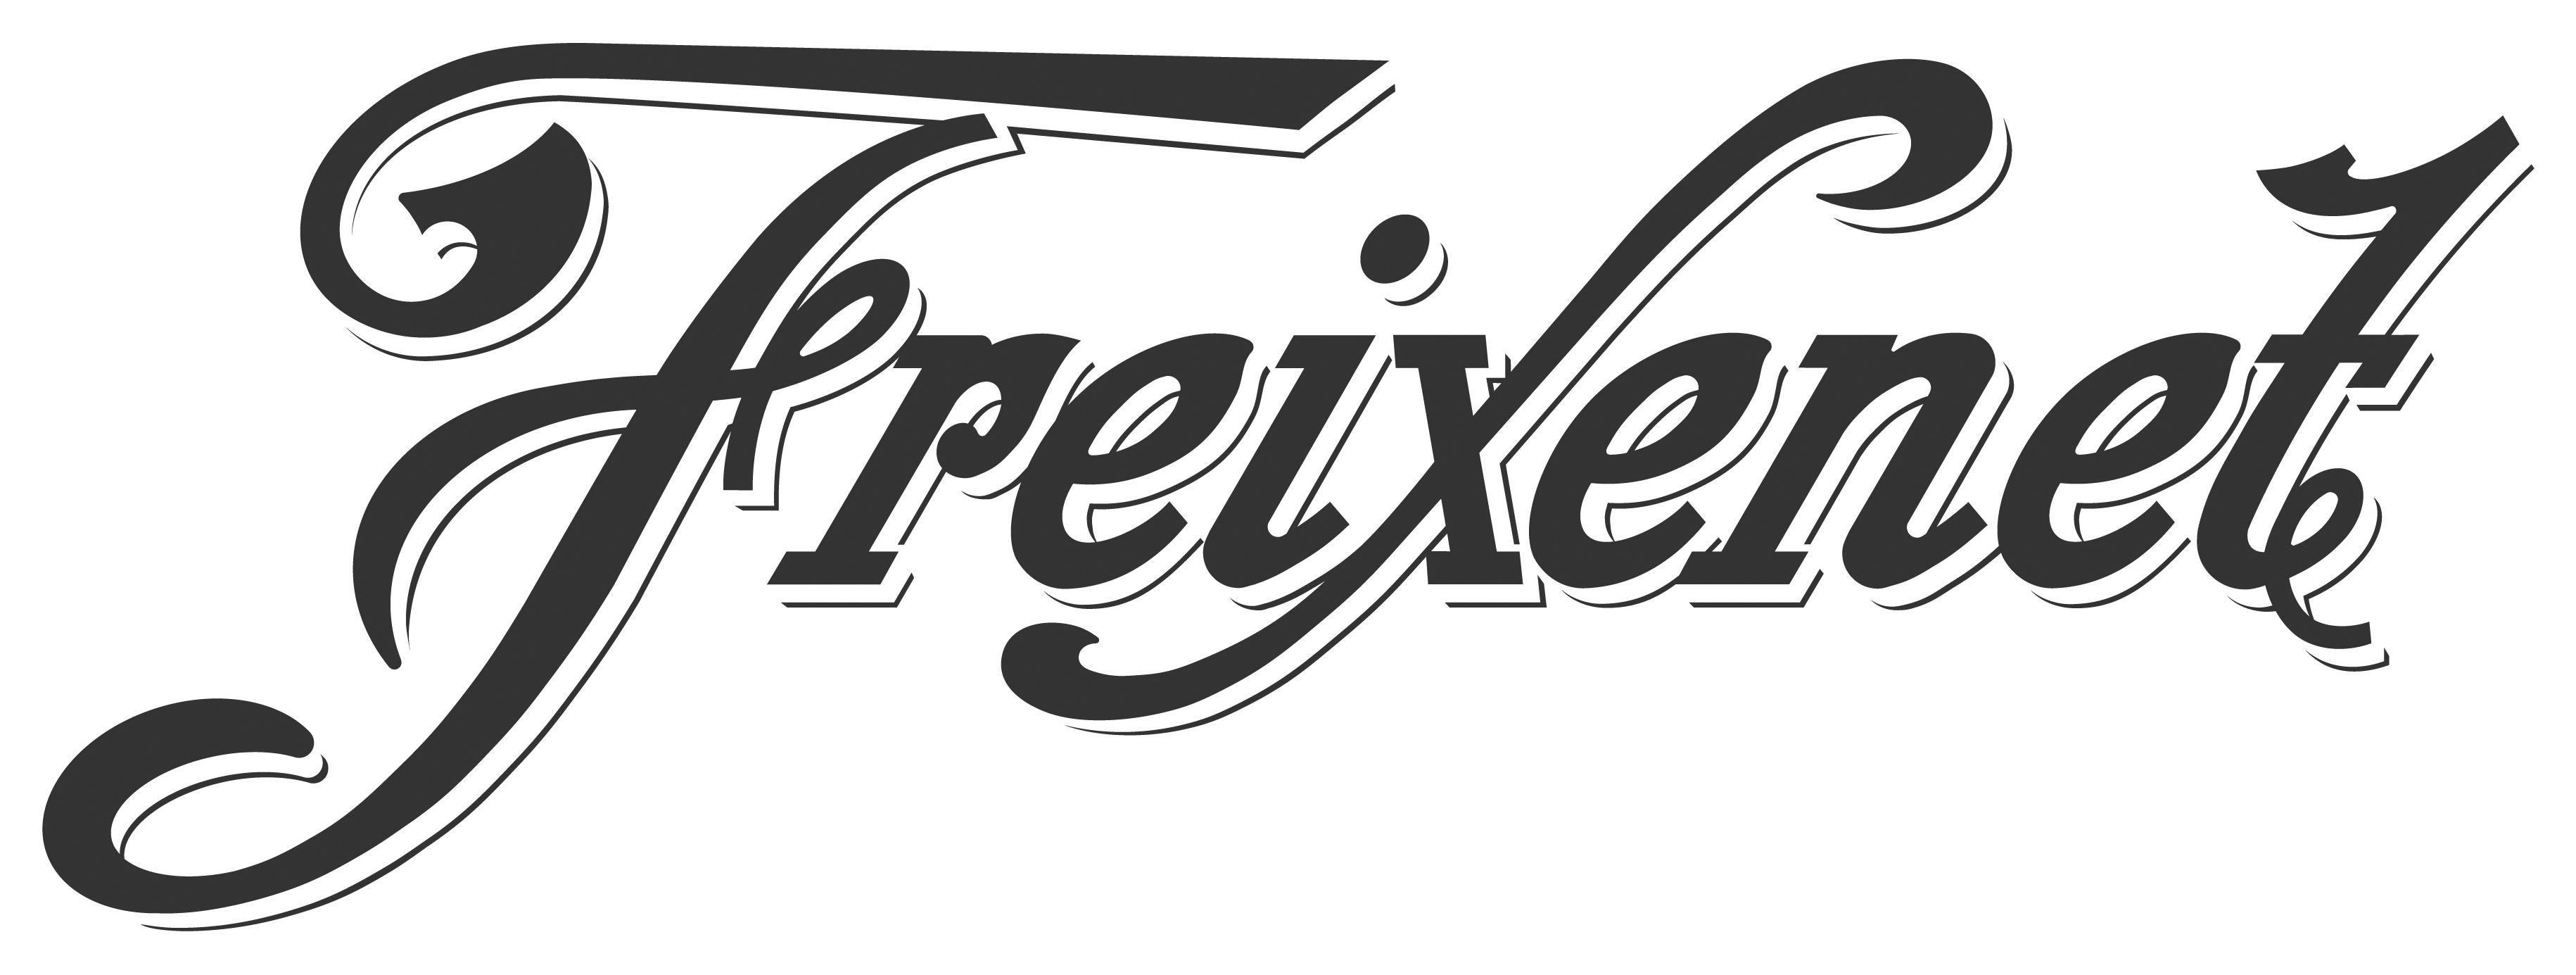 Freixenet Logo - File:Freixenet.jpg - Wikimedia Commons